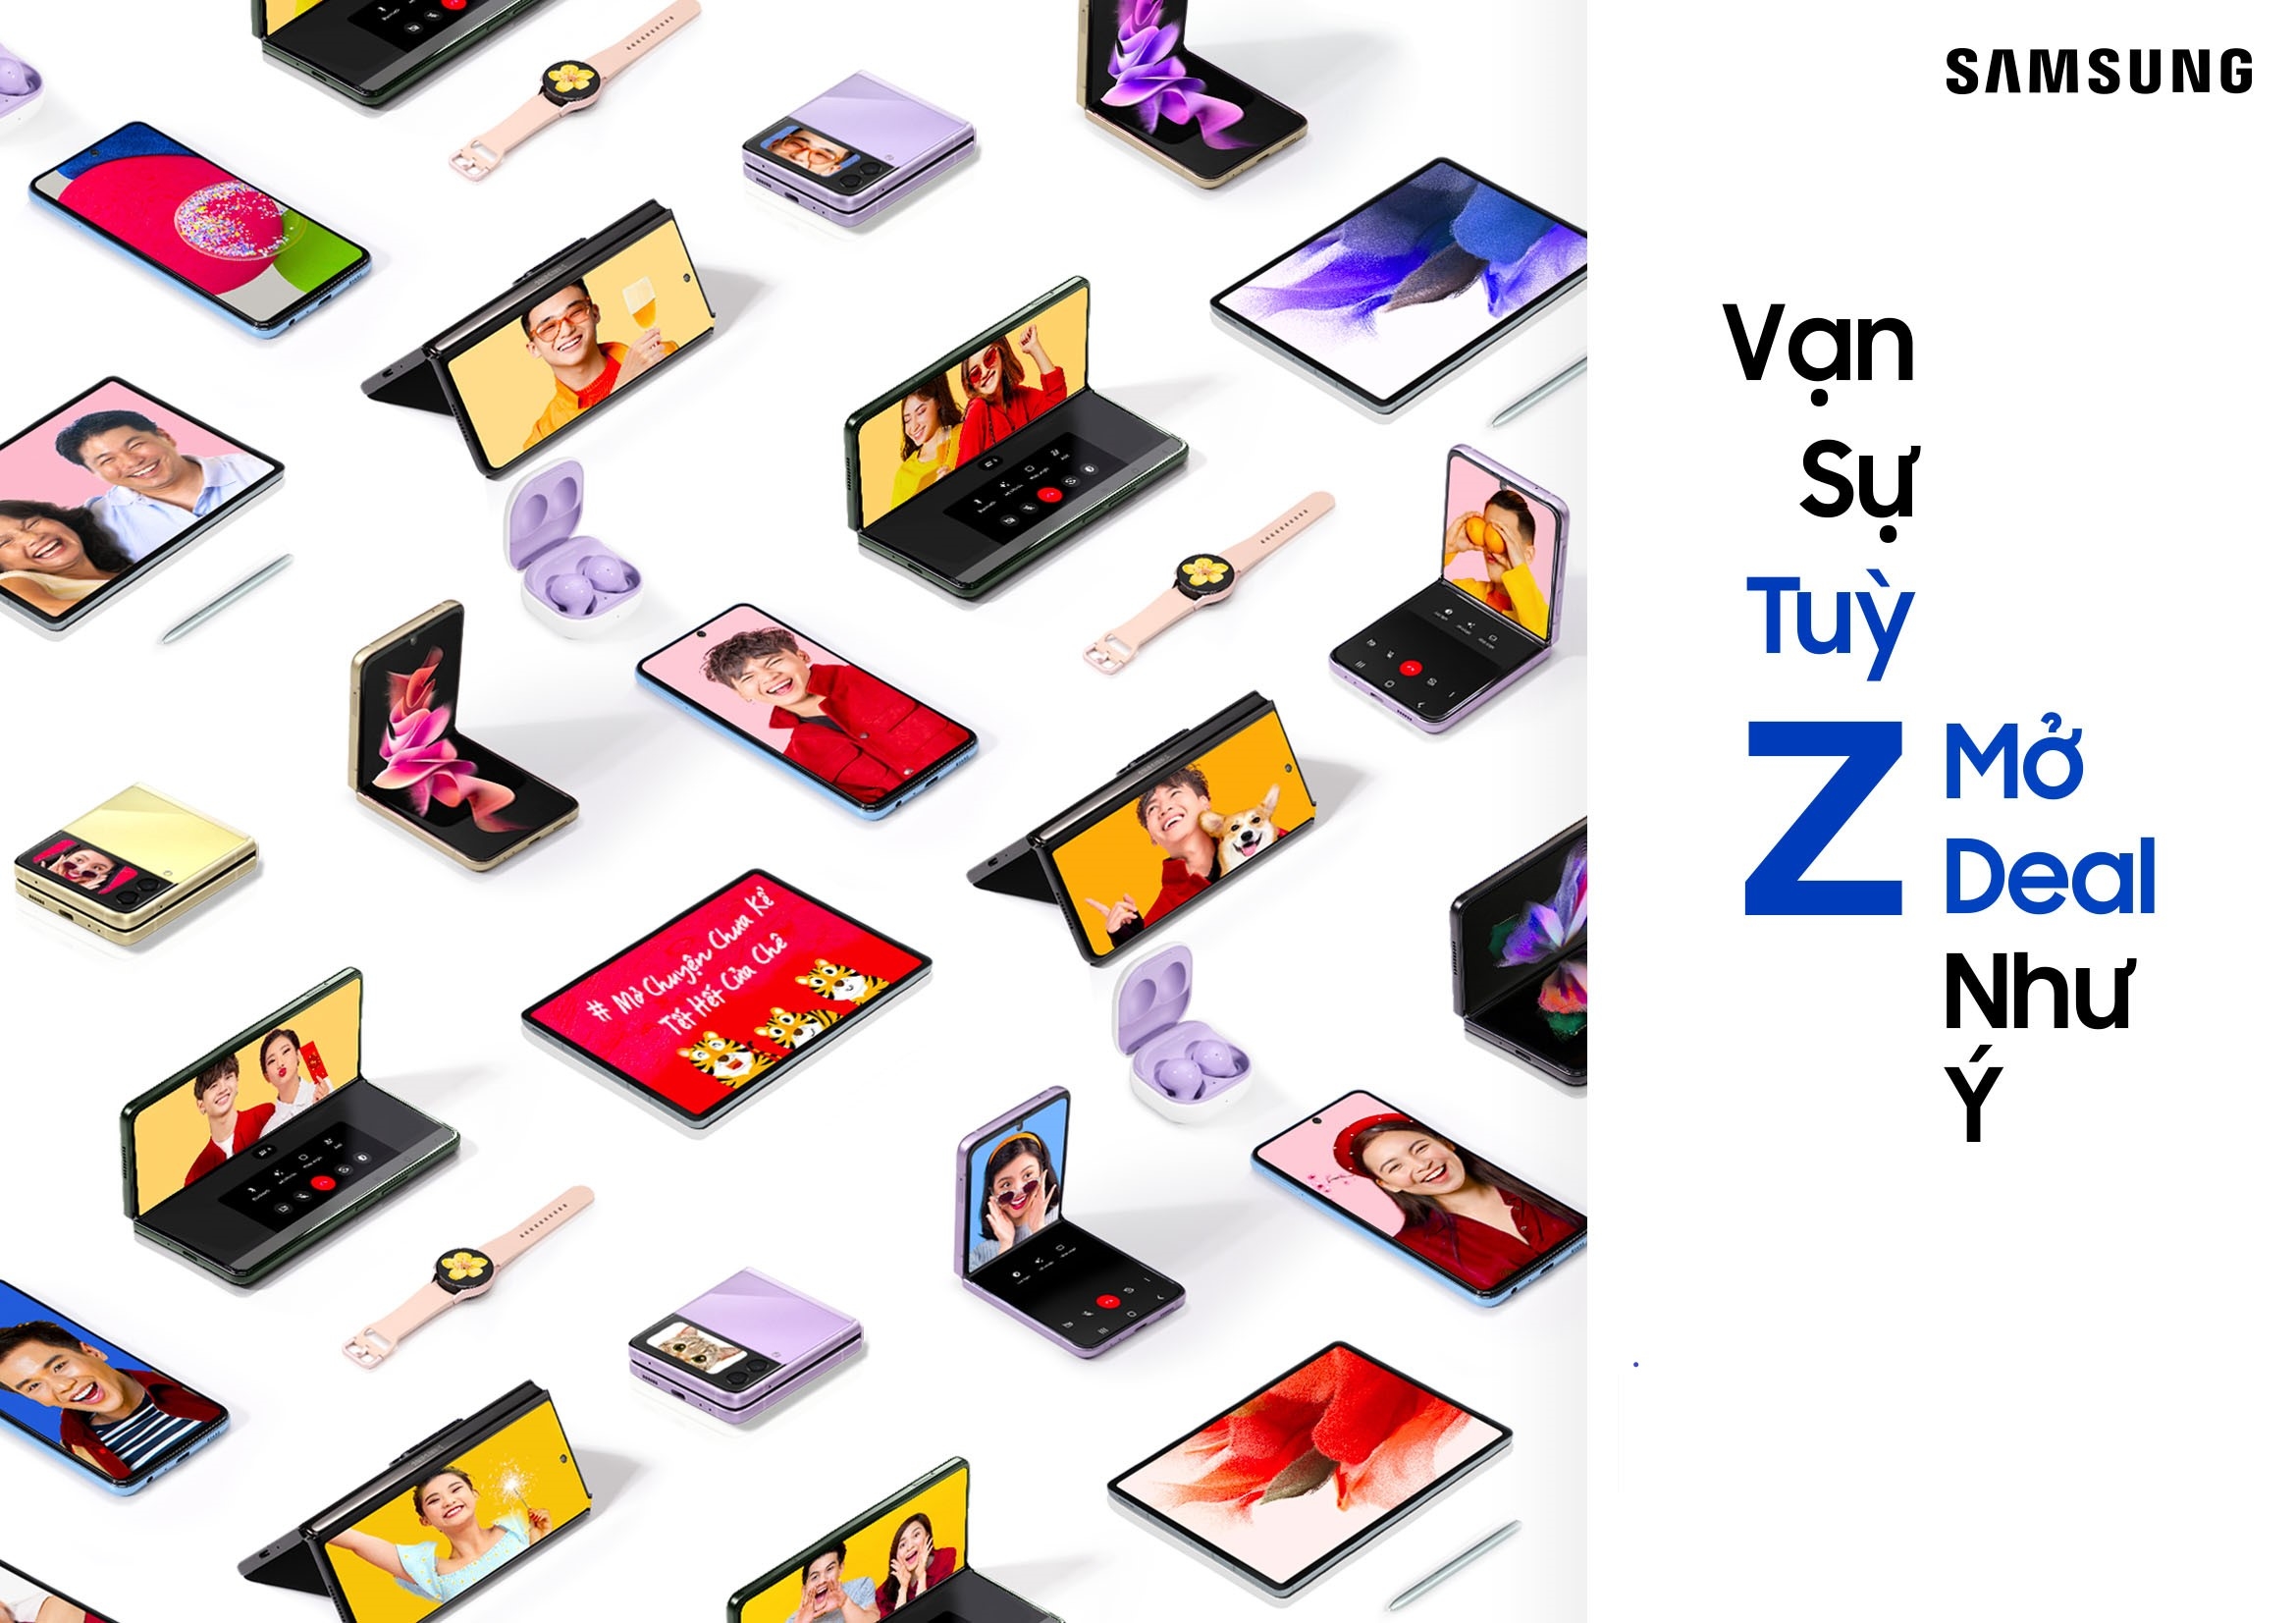 Cùng Samsung đón Tết 2022 tưng bừng với Chương Trình ưu đãi “Vạn Sự Tùy Z, Mở Deal Như Ý”